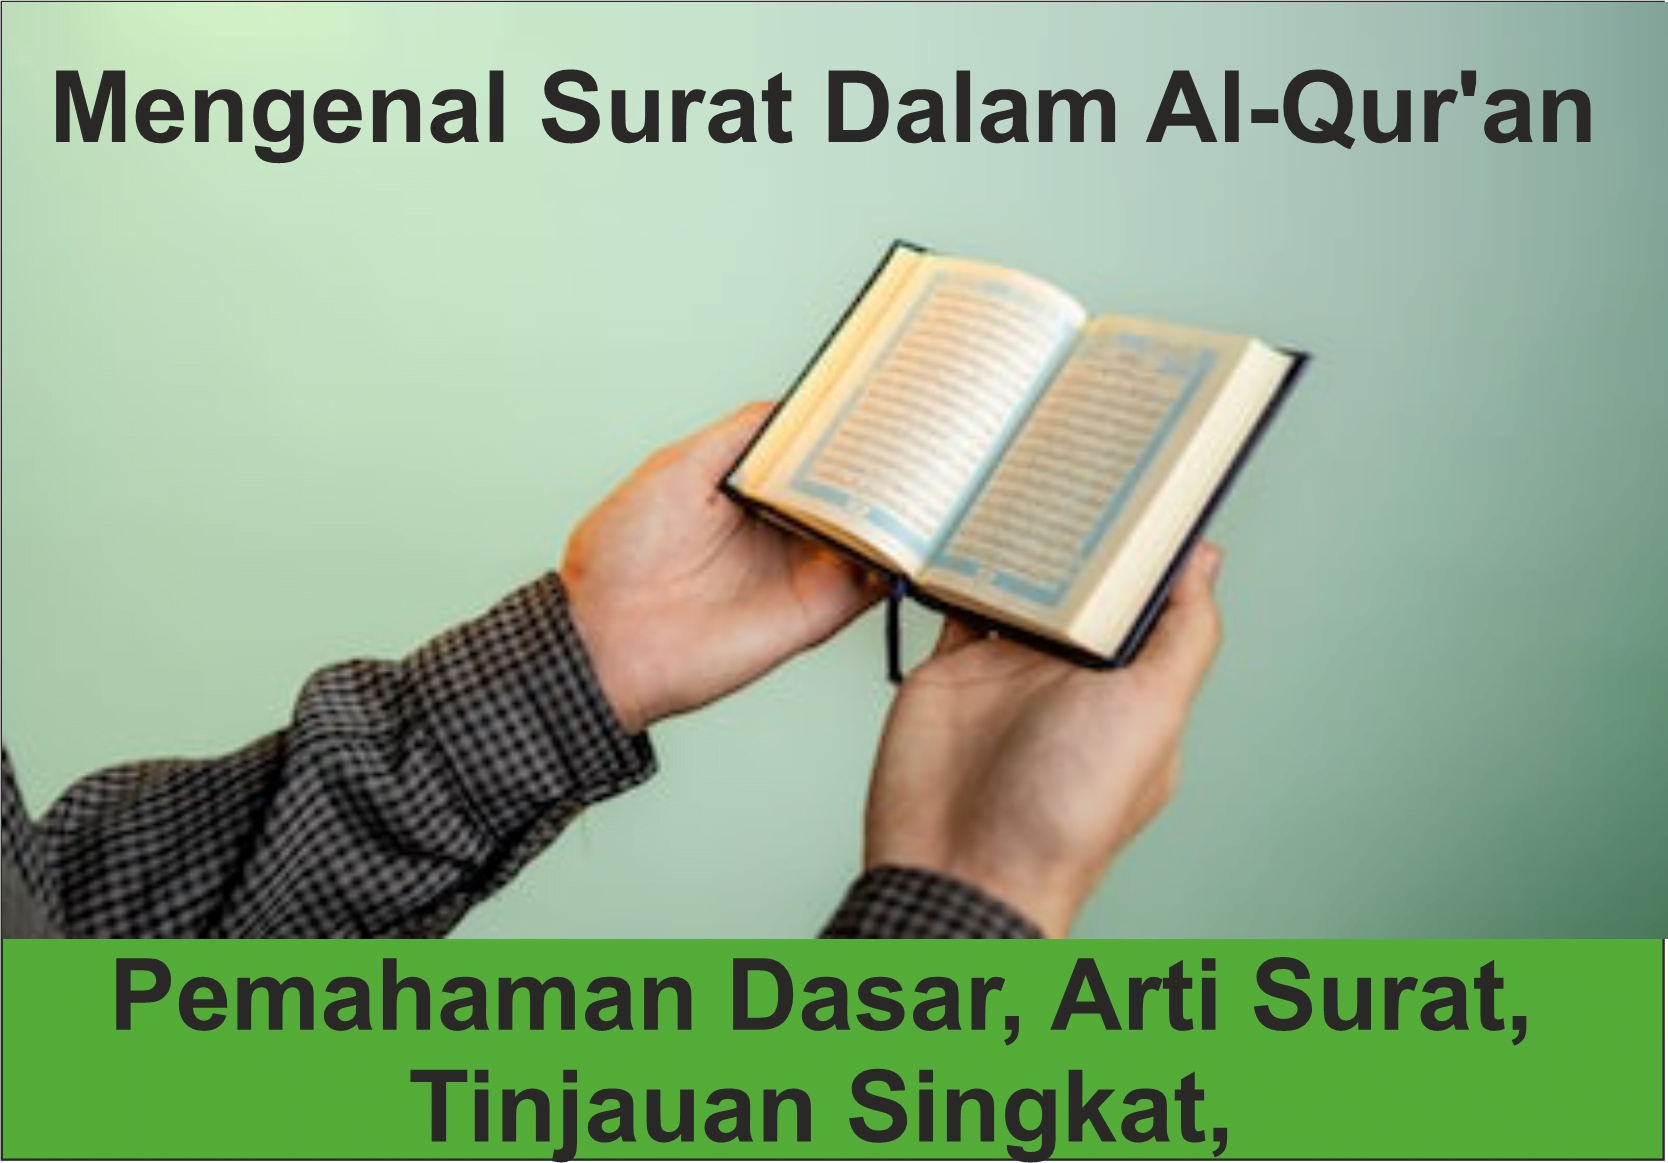 Surat Dalam Al-Qur'an: Pemahaman Dasar, Arti Surat, dan Tinjauan Singkat,